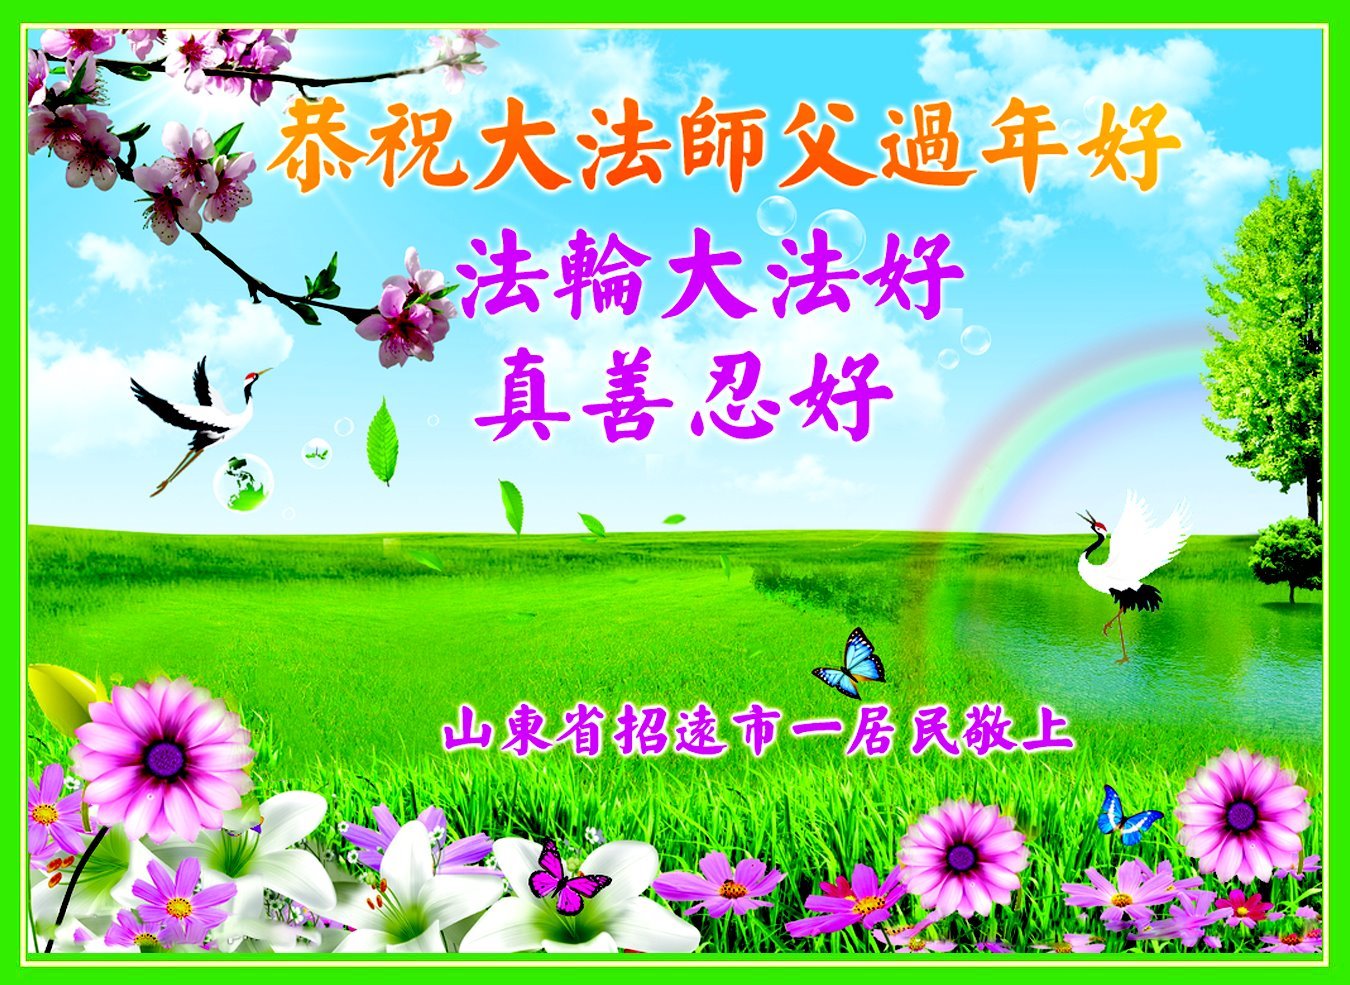 Image for article Сторонники Фалунь Дафа поздравляют Учителя Ли Хунчжи с китайским Новым годом